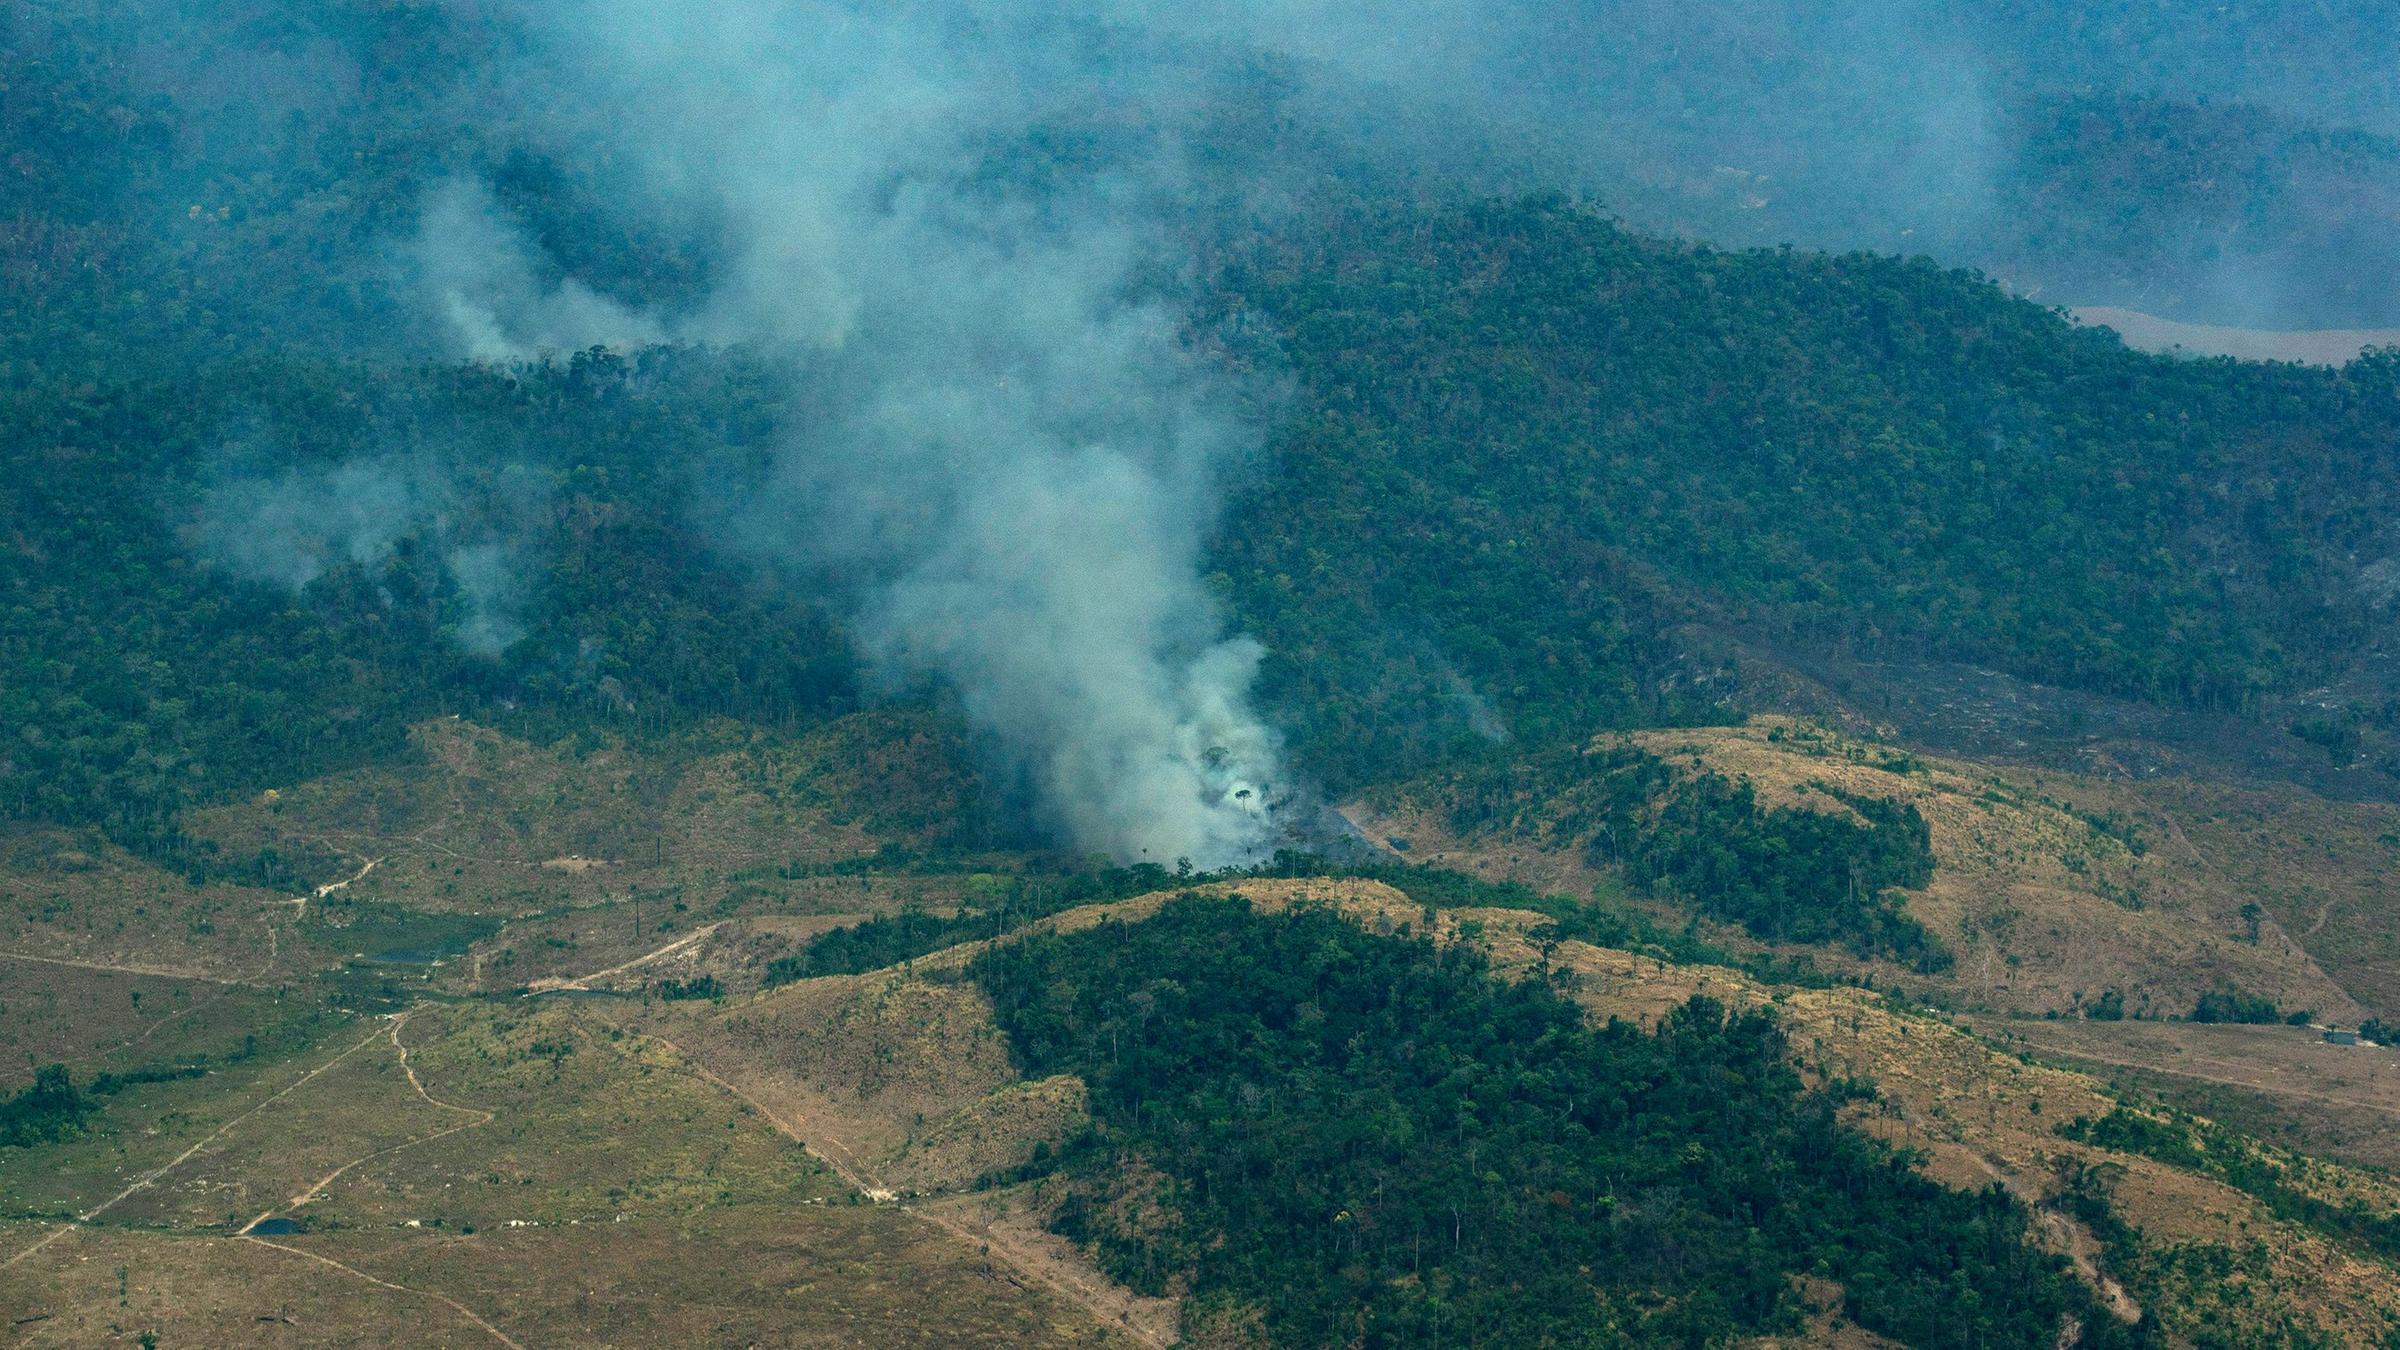 Folge Der Regenwald Abholzung Bank Verzichtet Auf Brasilianische Anleihen Zdfheute